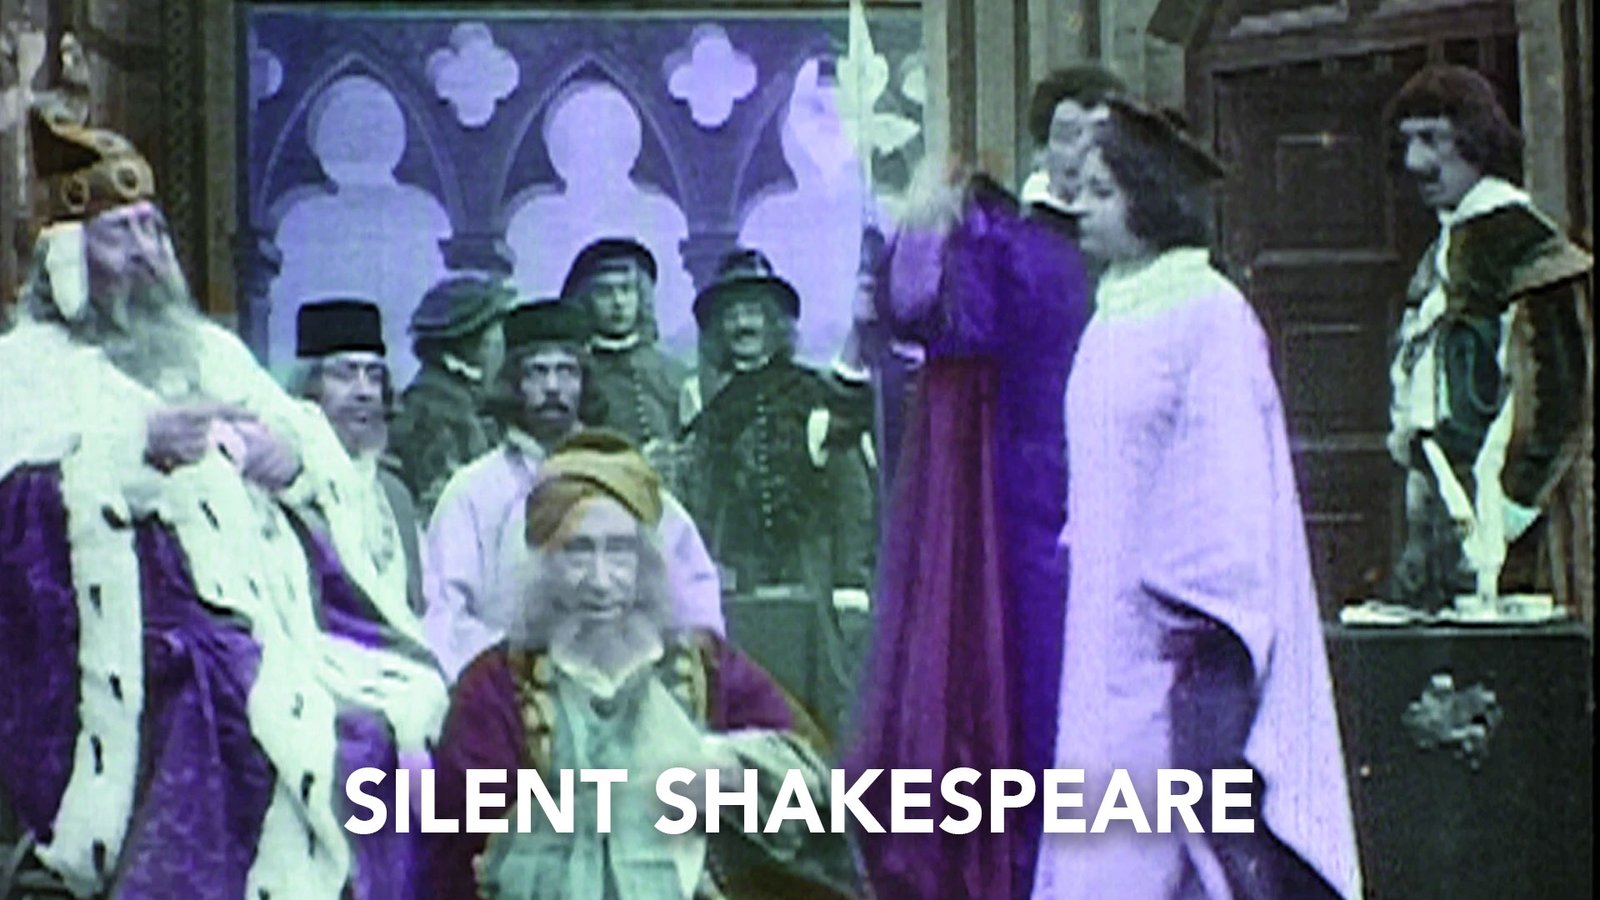 Silent Shakespeare